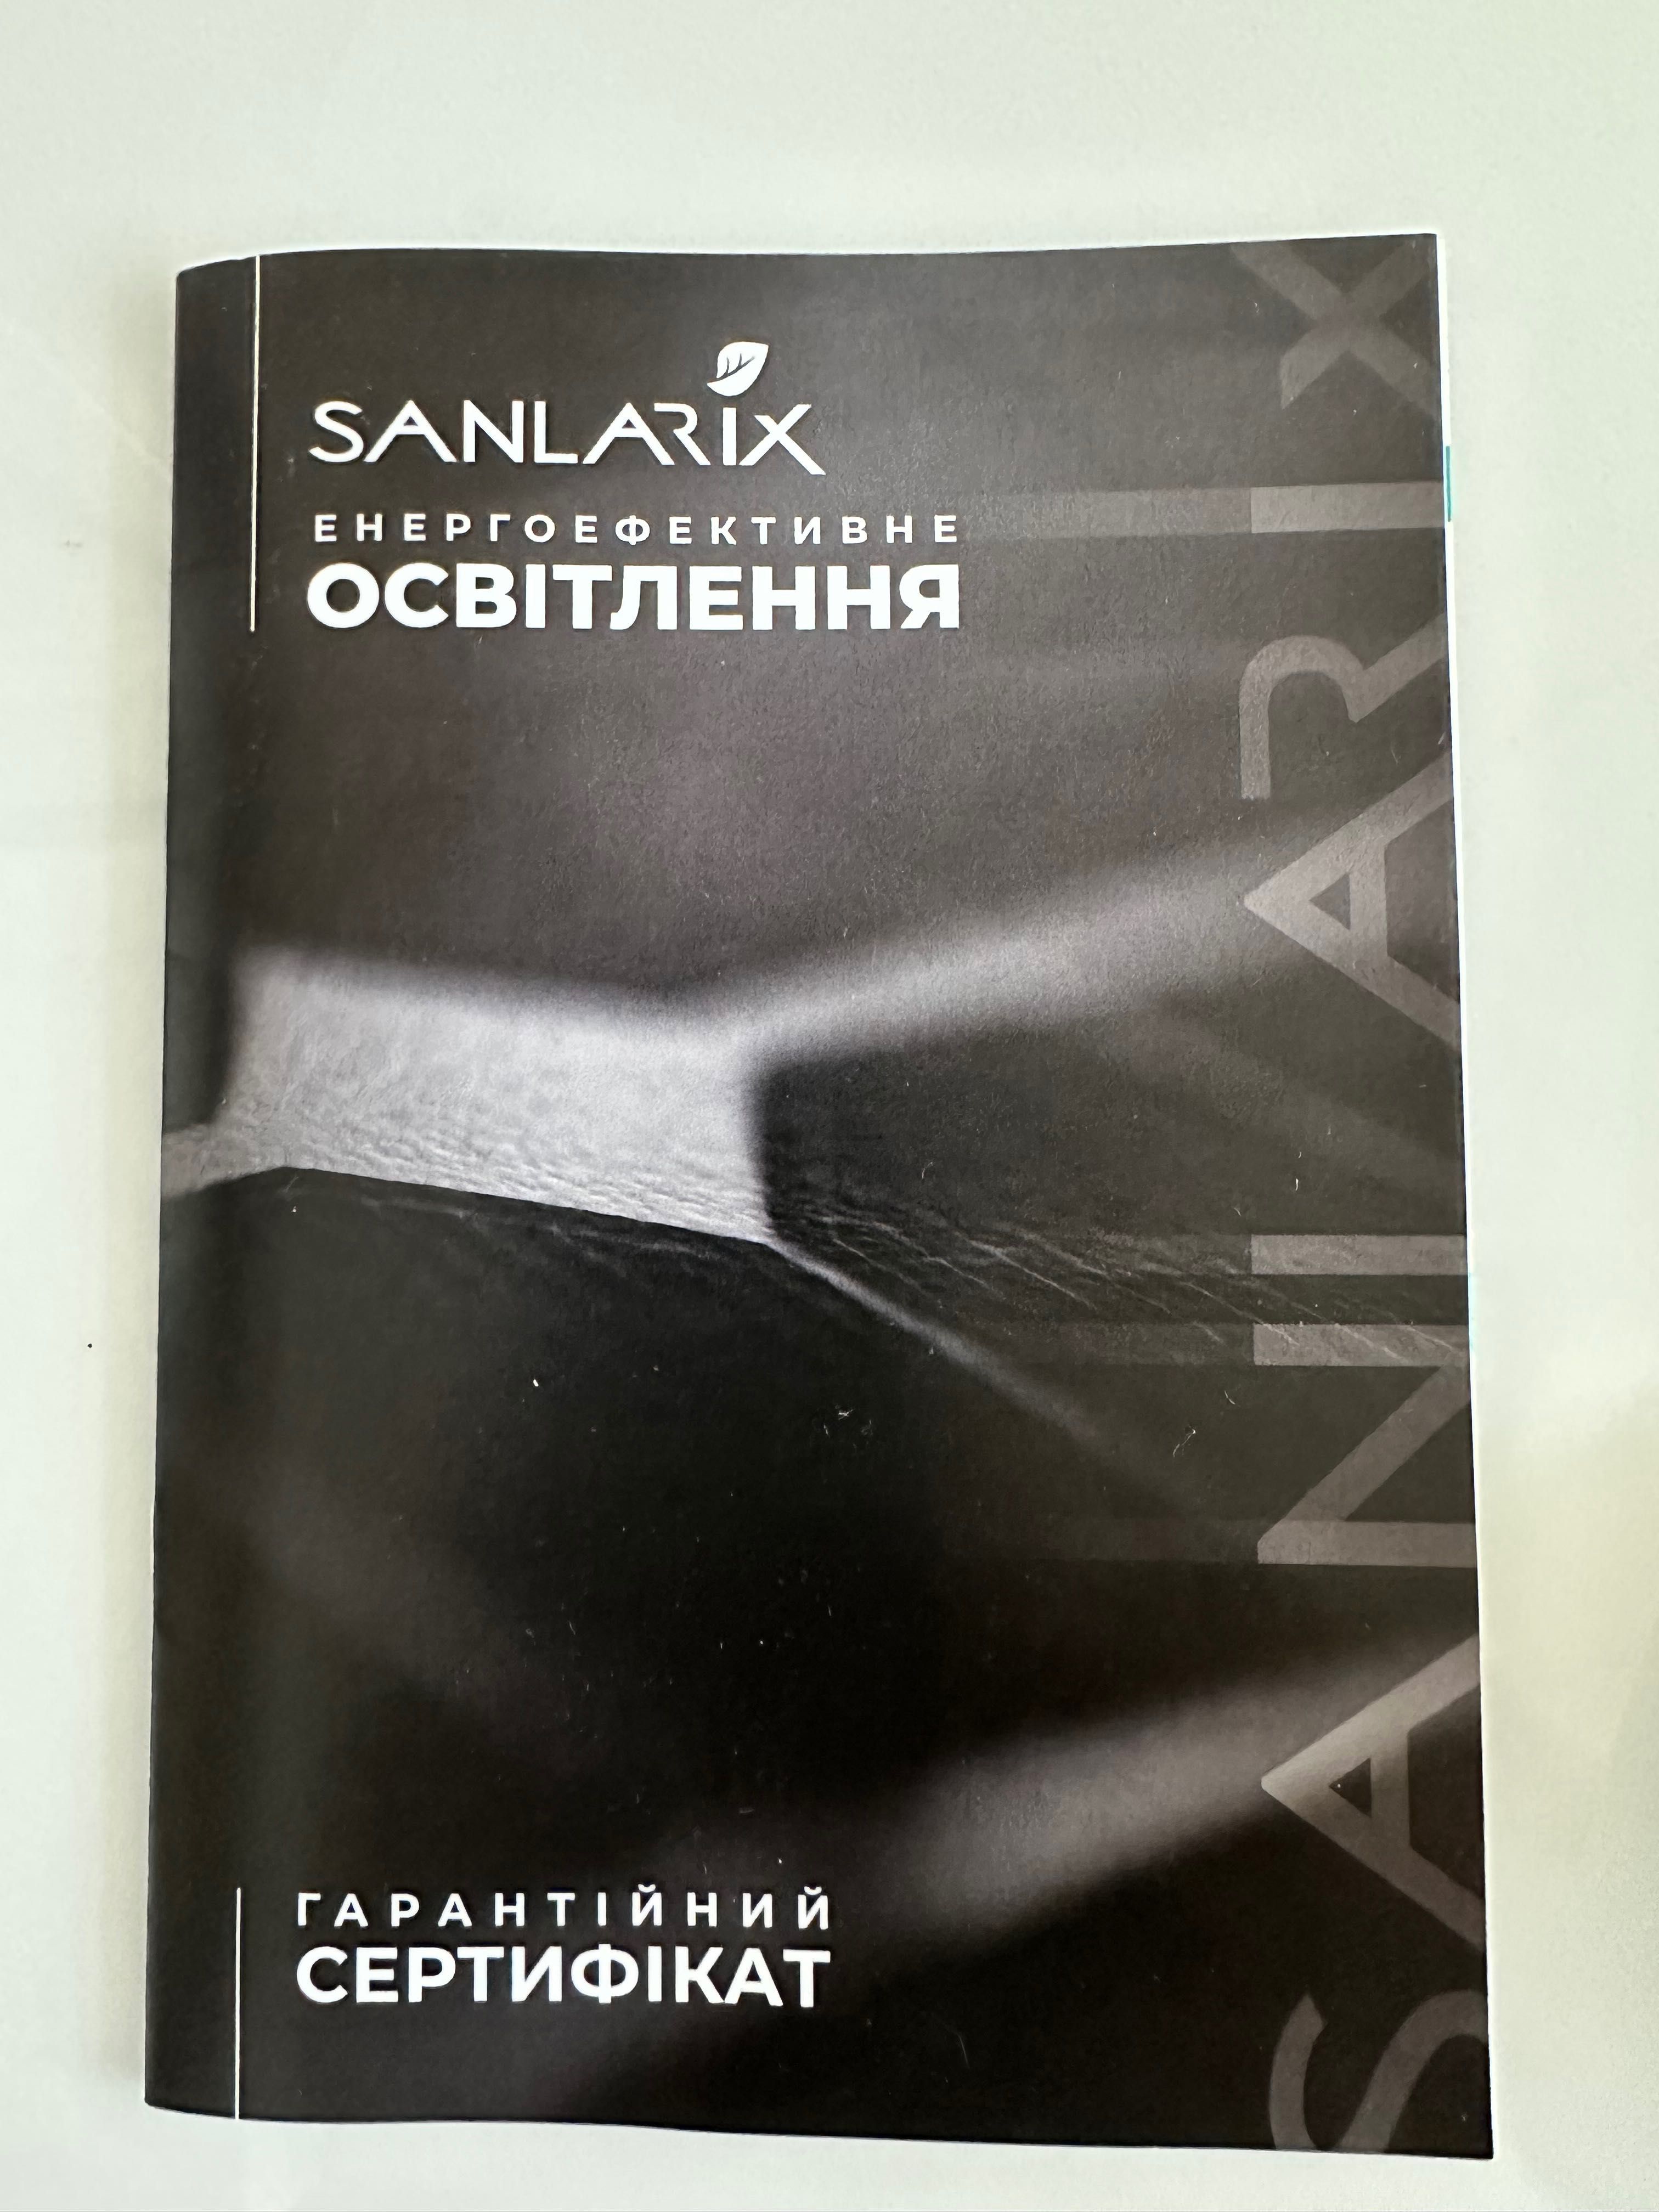 Сонячна станція Sanlarix 50 W (Mini - 50)